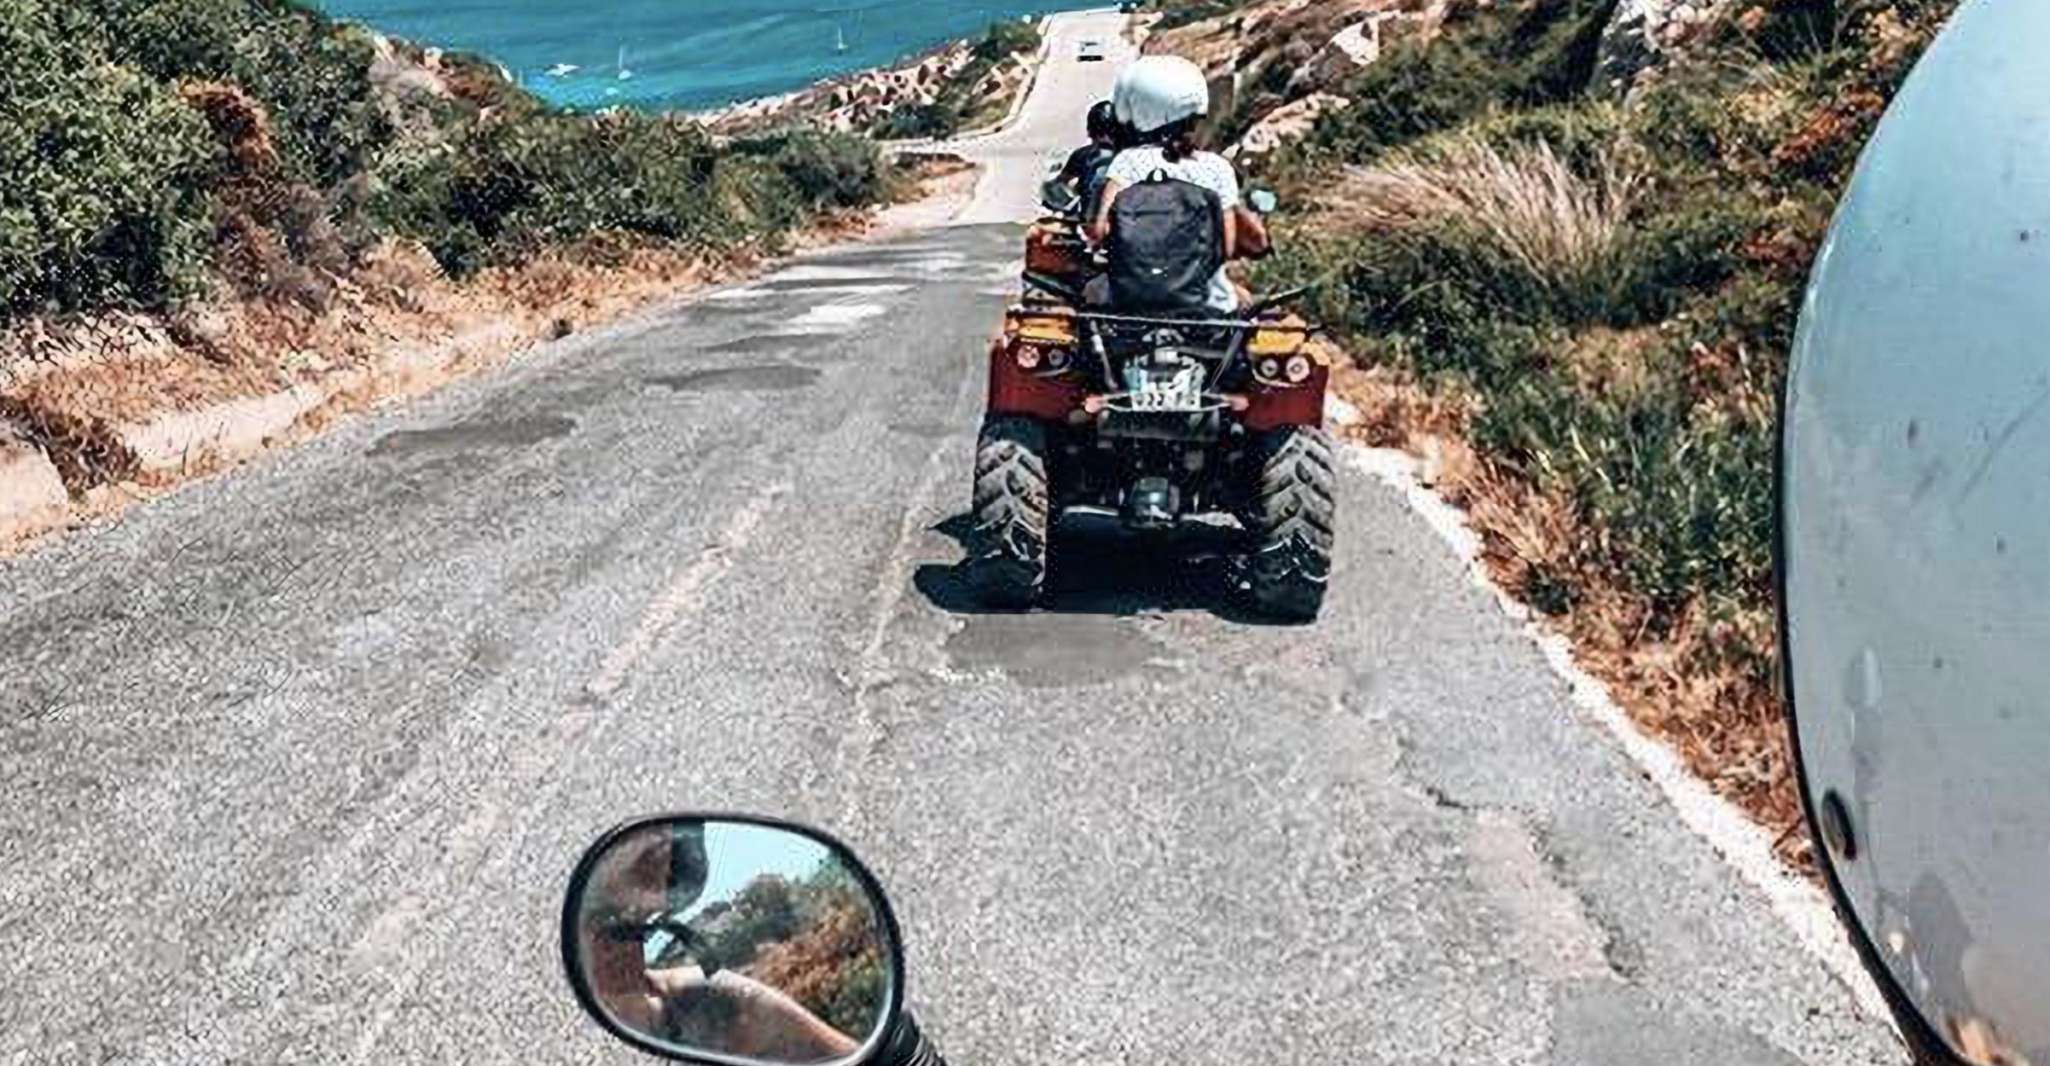 Calvi, 2-Hour Quad Bike Trip Between Sea and Mountains - Housity